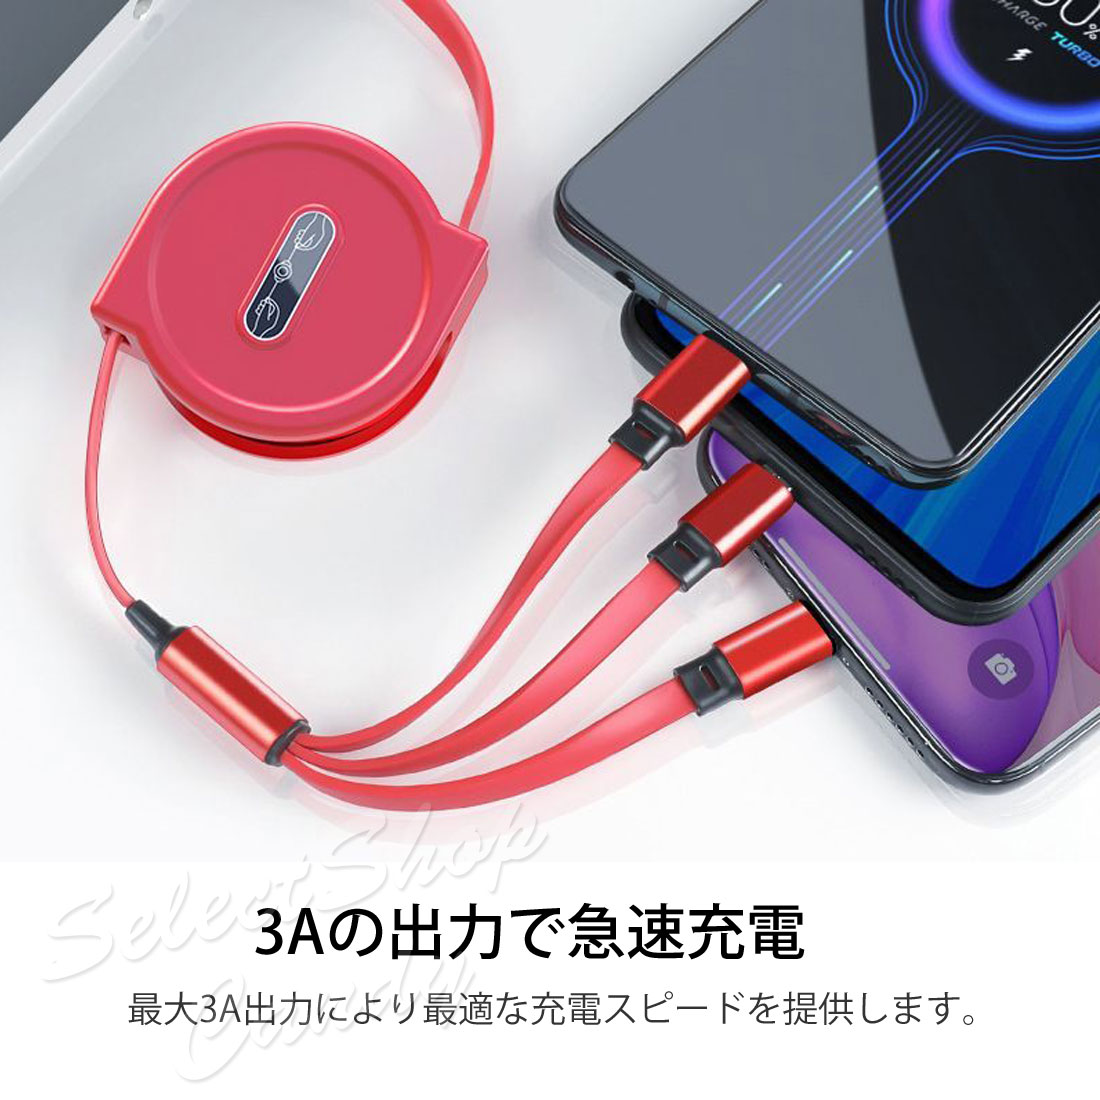 20今月のSALE 充電ケーブル 充電コード 3ni1 USB両面挿入 iPhone Type-c アイフォン タイプC ケーブル収納 リール式 巻き取り LSF-064